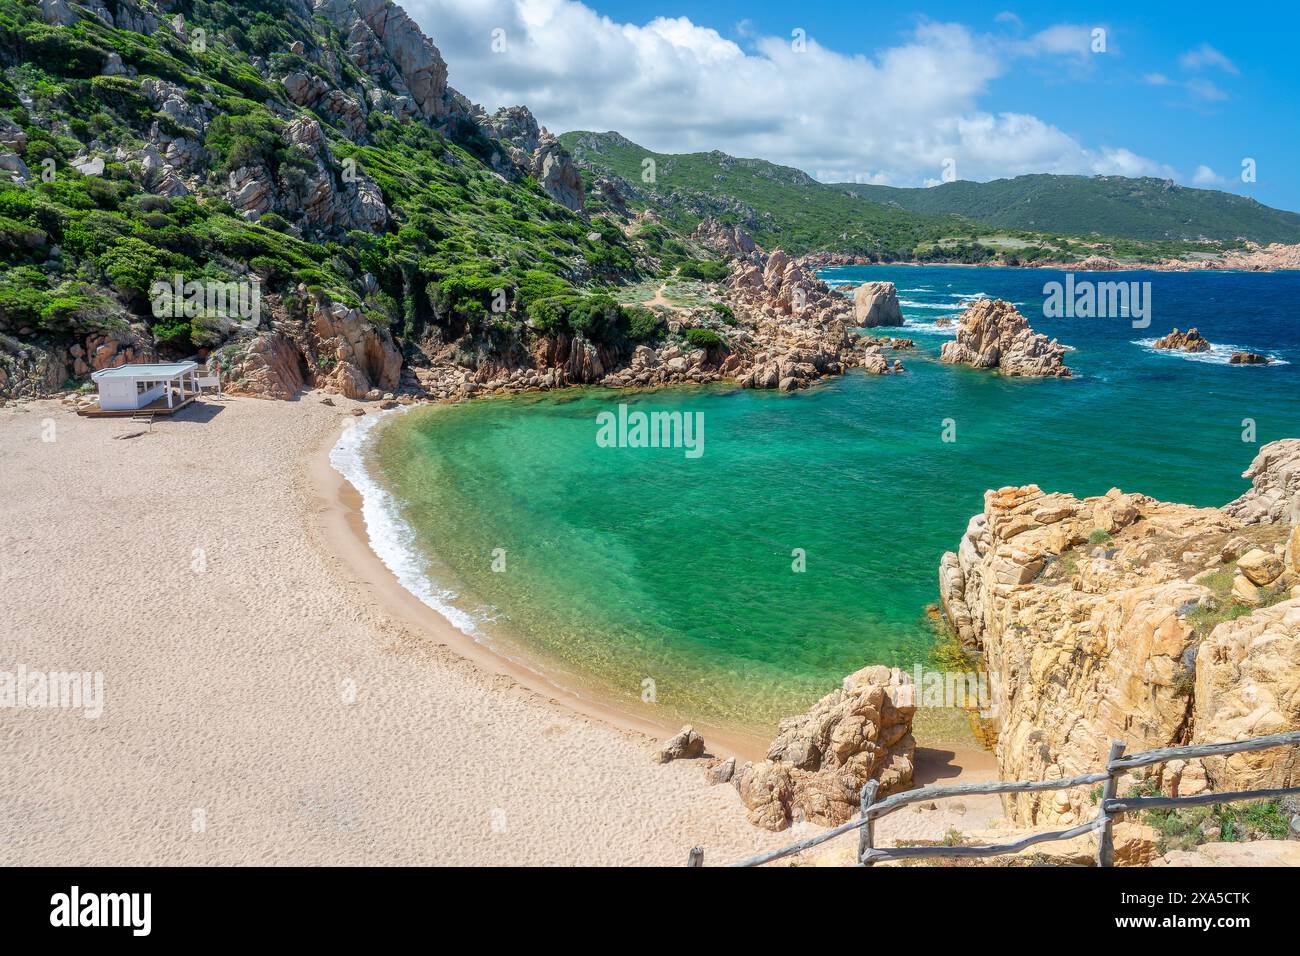 Vue sur la plage de sable de Cala Li Cossi, crique pittoresque sur la côte méditerranéenne et la mer avec de beaux rochers dans l'eau claire à Costa Paradiso, Sardaigne lan Banque D'Images